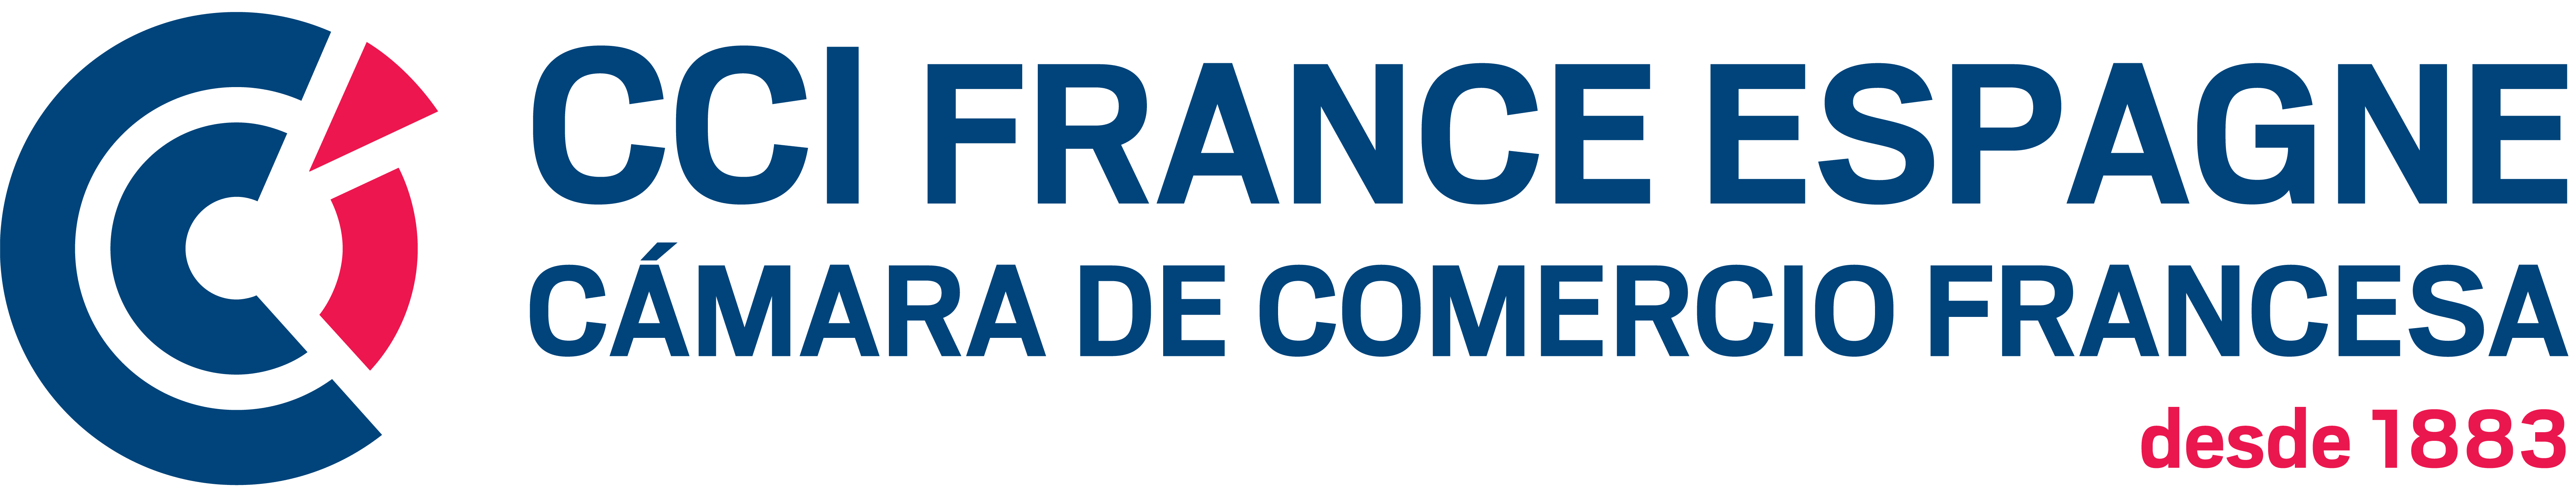 CAMARA DE COMERCIO FRANCESA logo